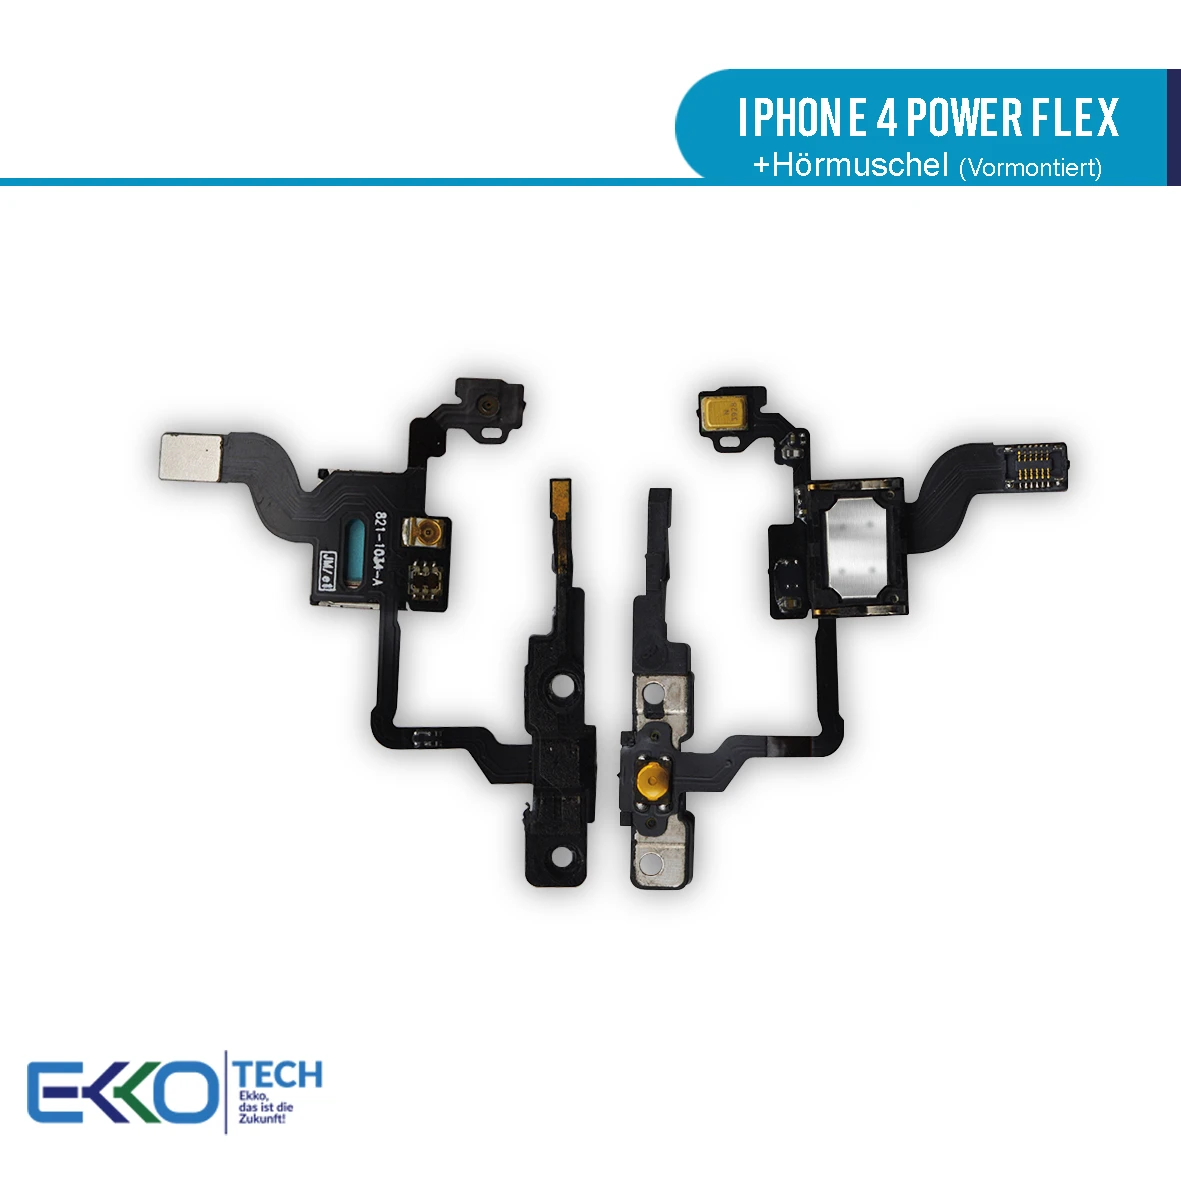 Für iPhone 4 Power Flex + Hörmuschel (Vormontiert)